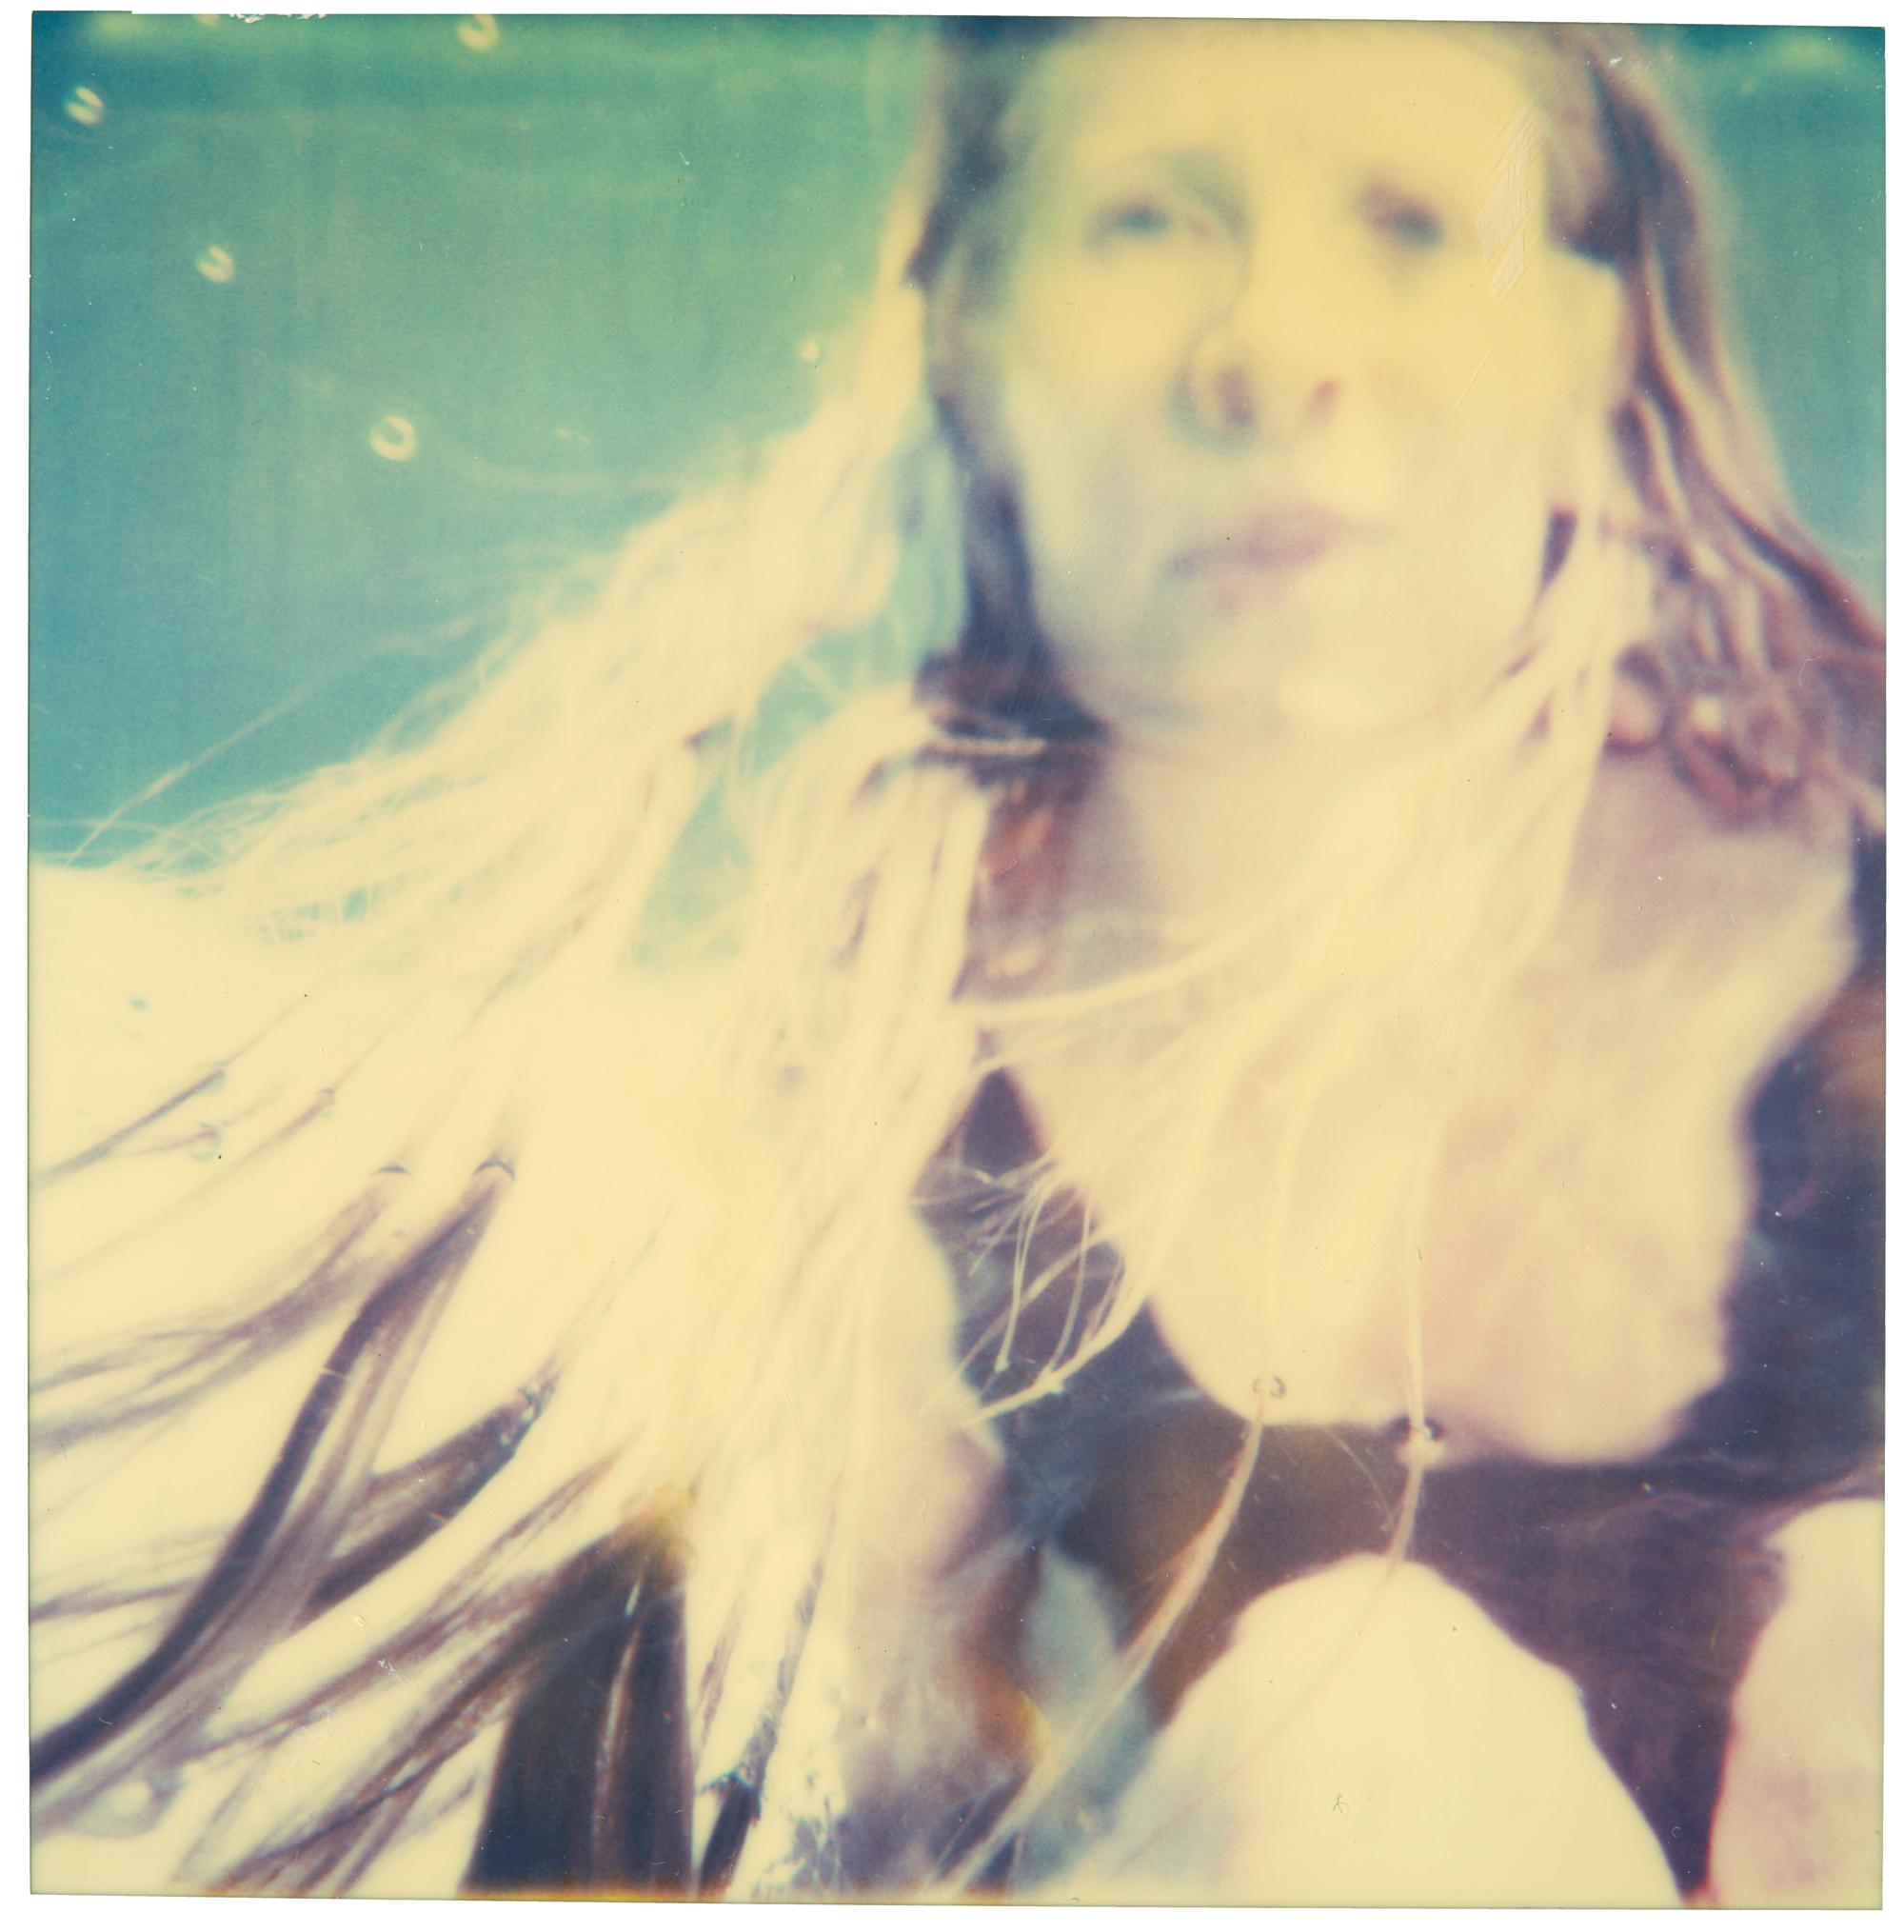 Stefanie Schneider Portrait Photograph - Under Water (The Last Picture Show)